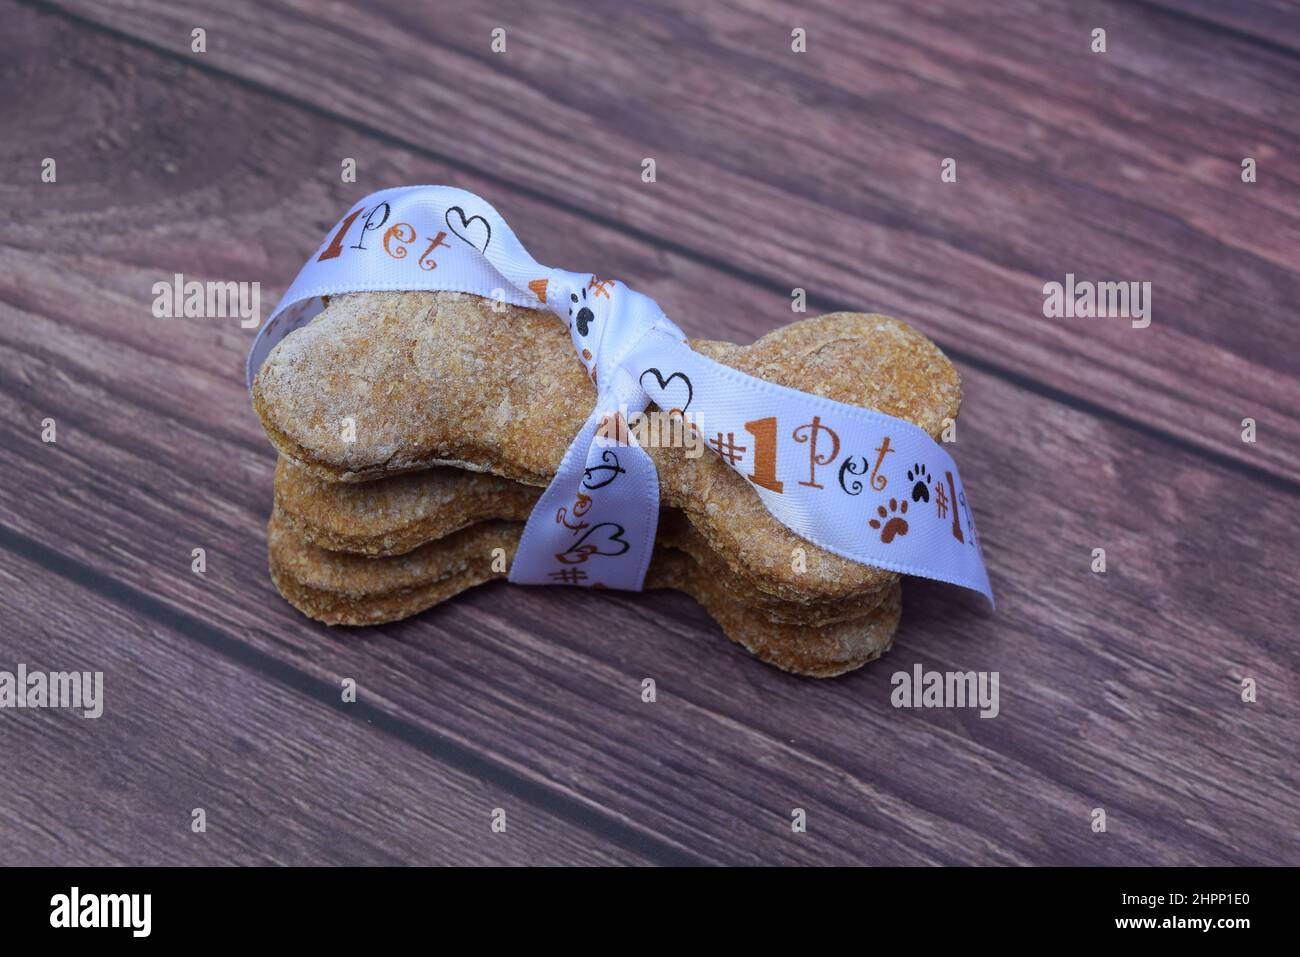 Homemade 'bone shaped' dog treats wrapped in pet themed ribbon. Stock Photo